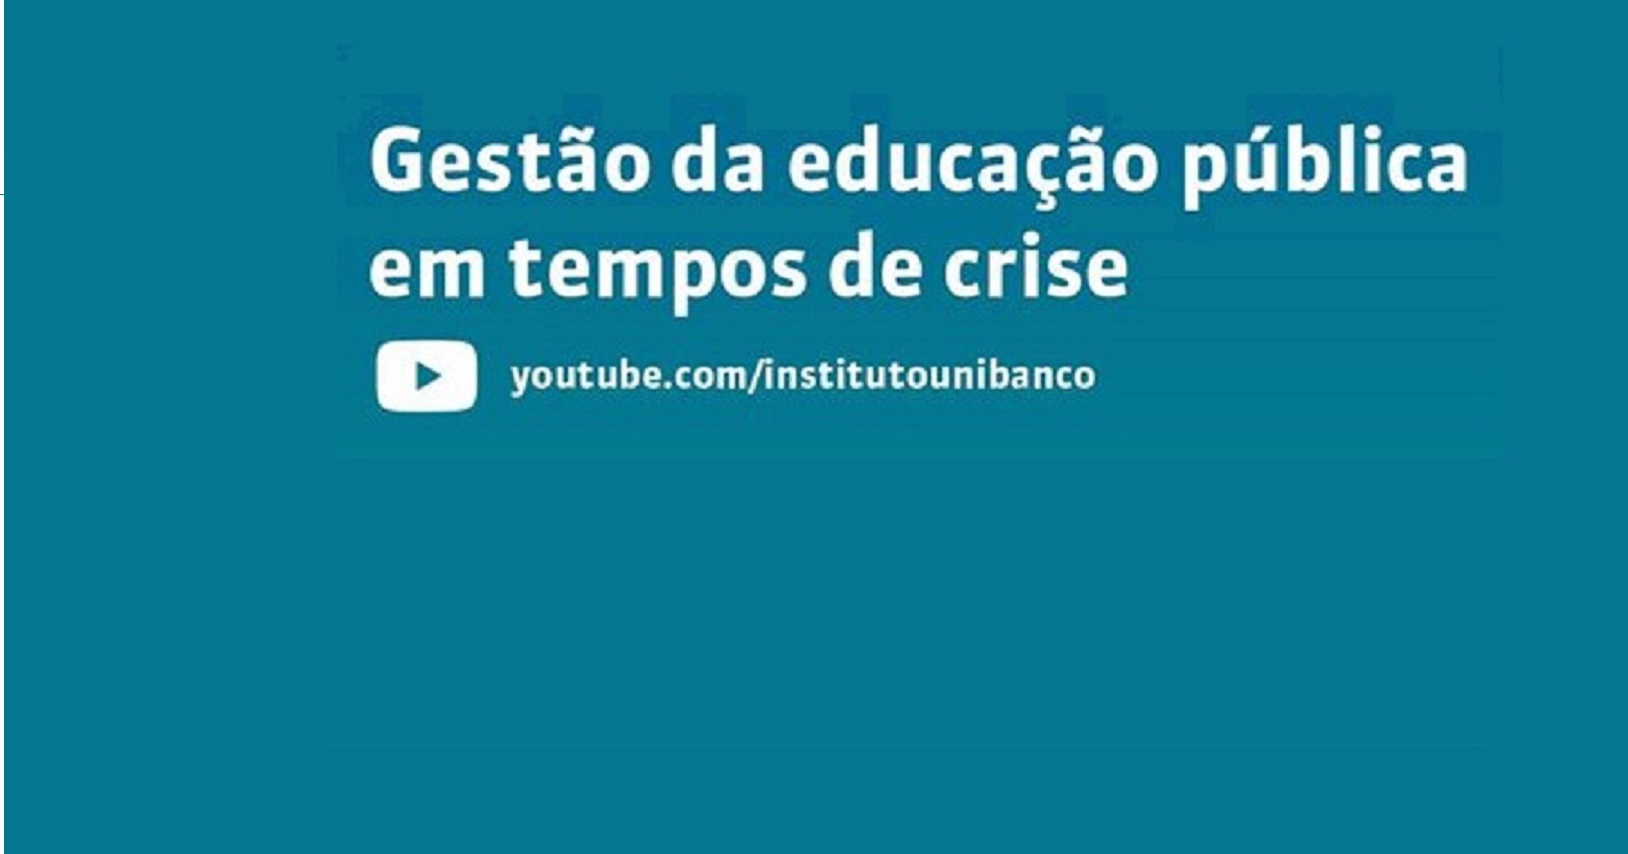 Instituto Unibanco promove webnário “Gestão da Educação Pública em tempos de crise”